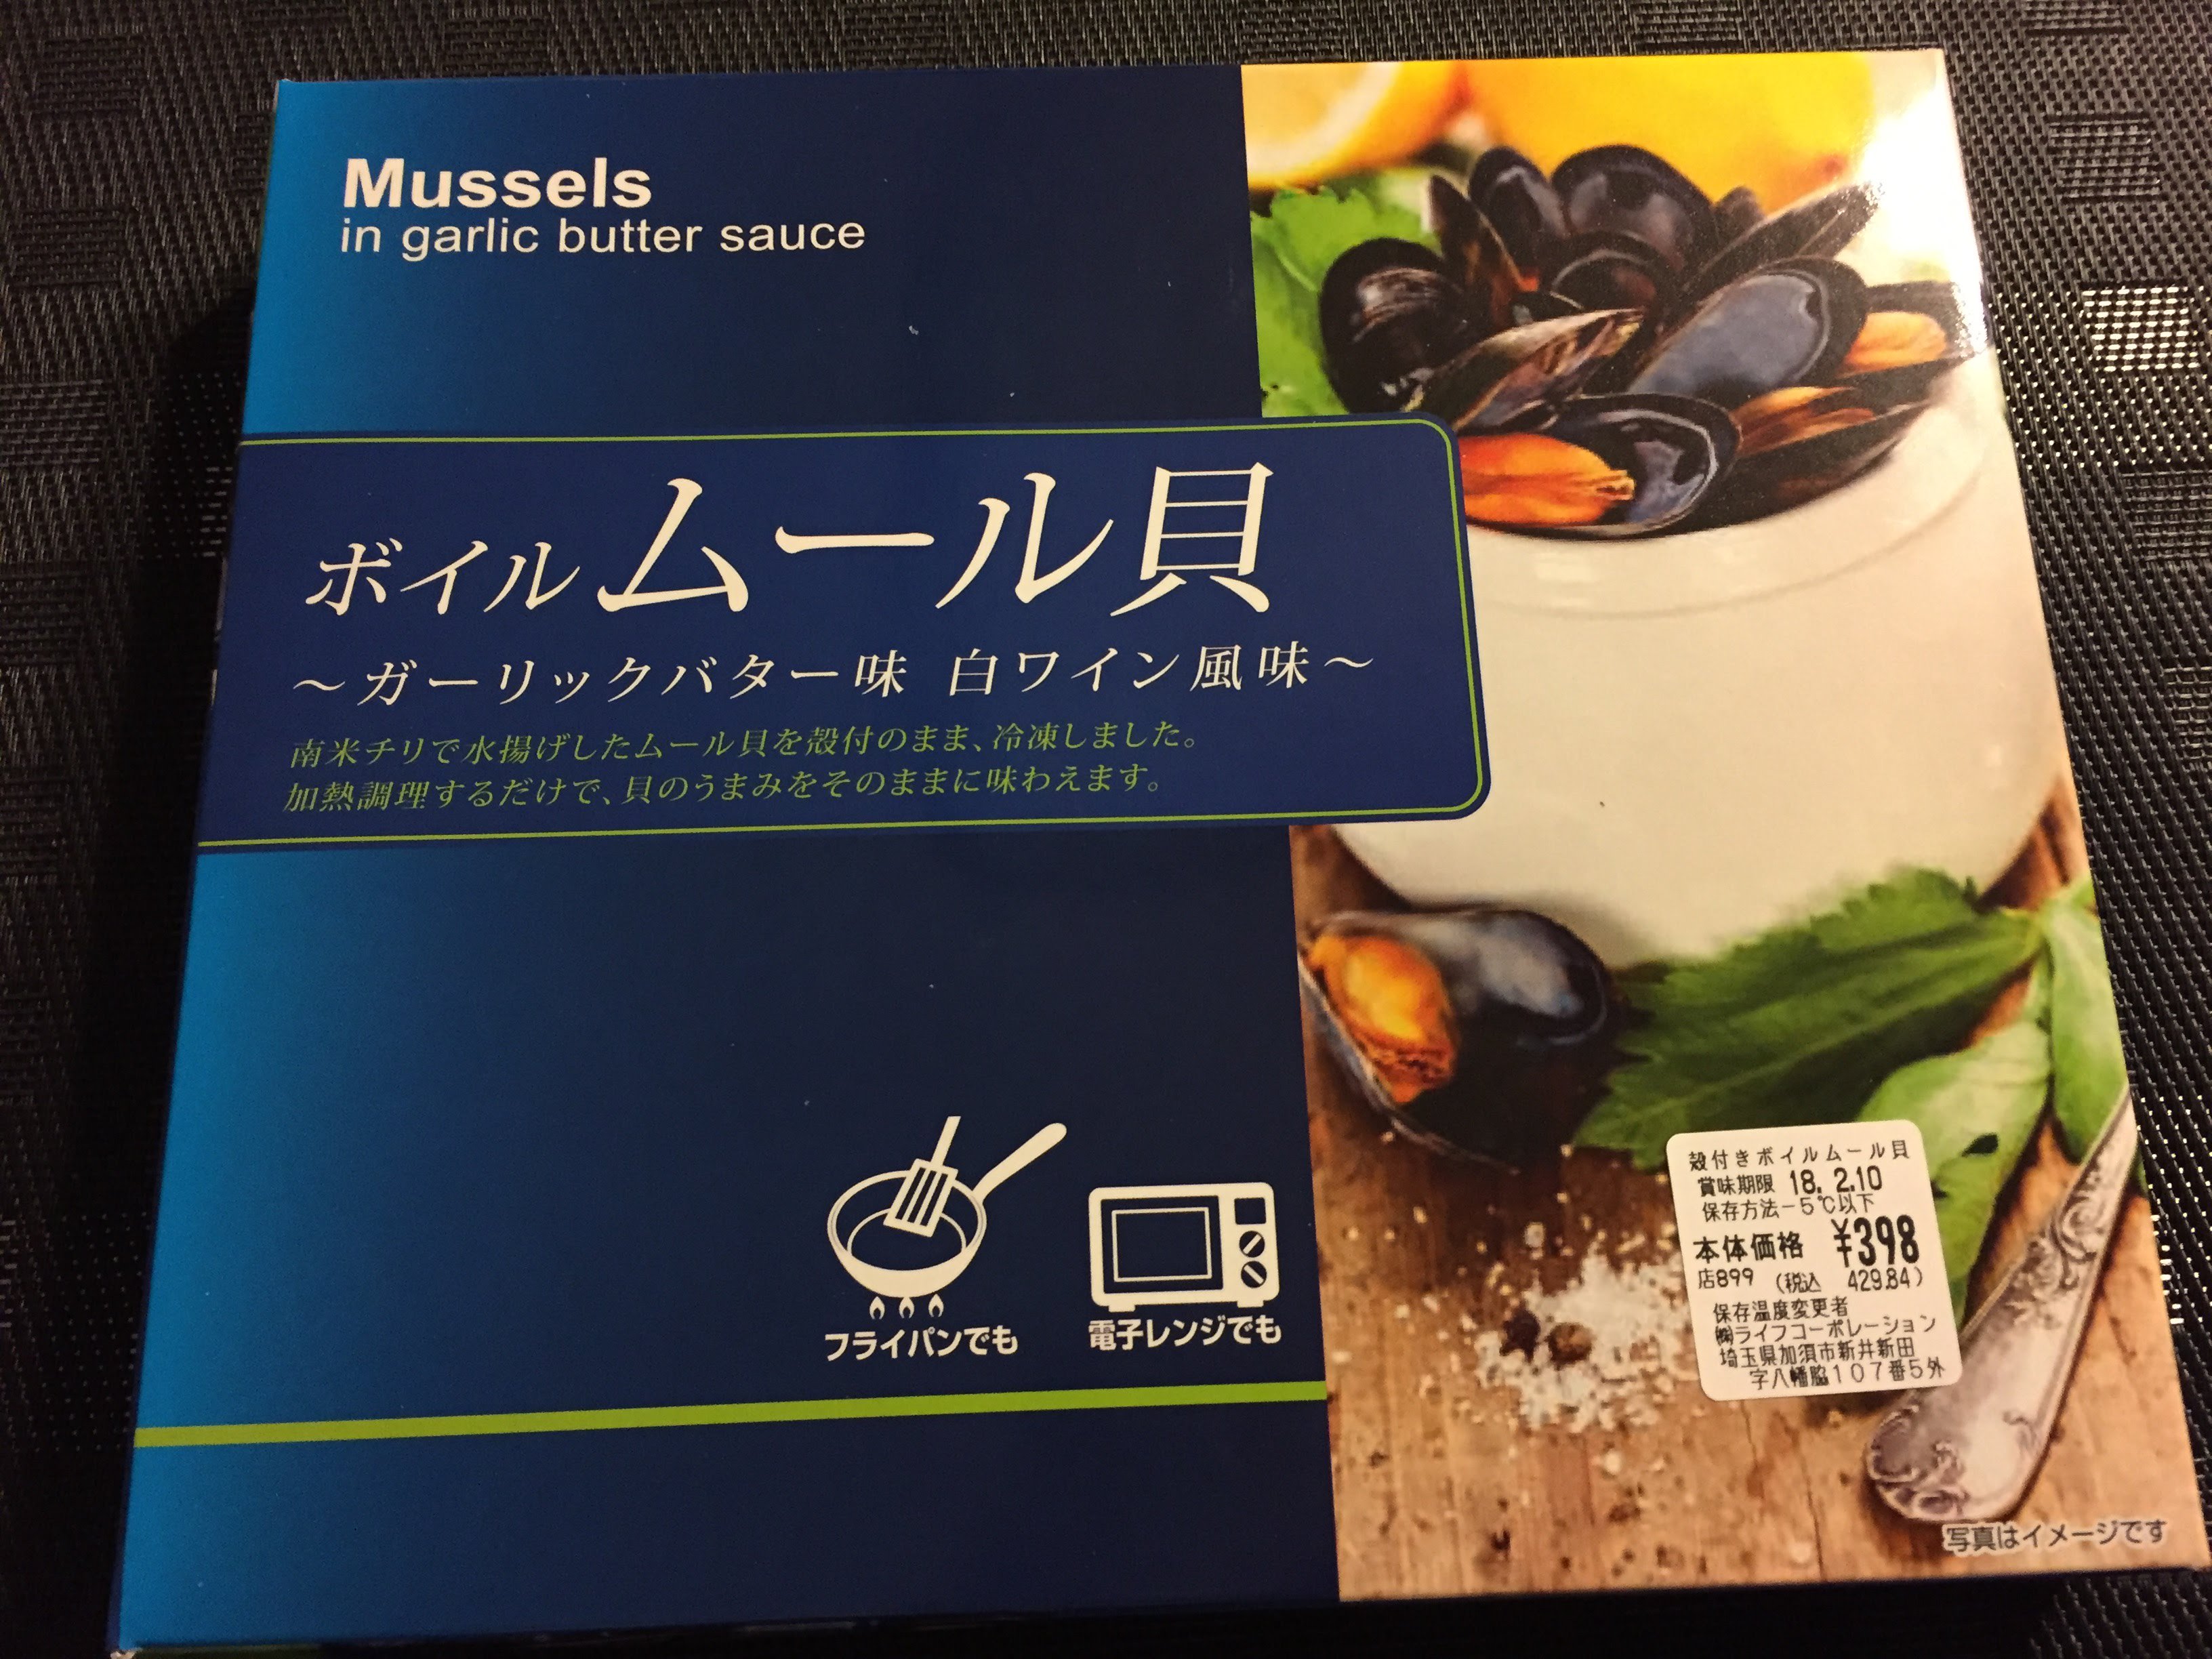 توییتر 加藤敏寛 Toshihiro Kato در توییتر 冷凍のムール貝 あまり売っていないので見つけると買ってしまう T Co Mwgtx752zc